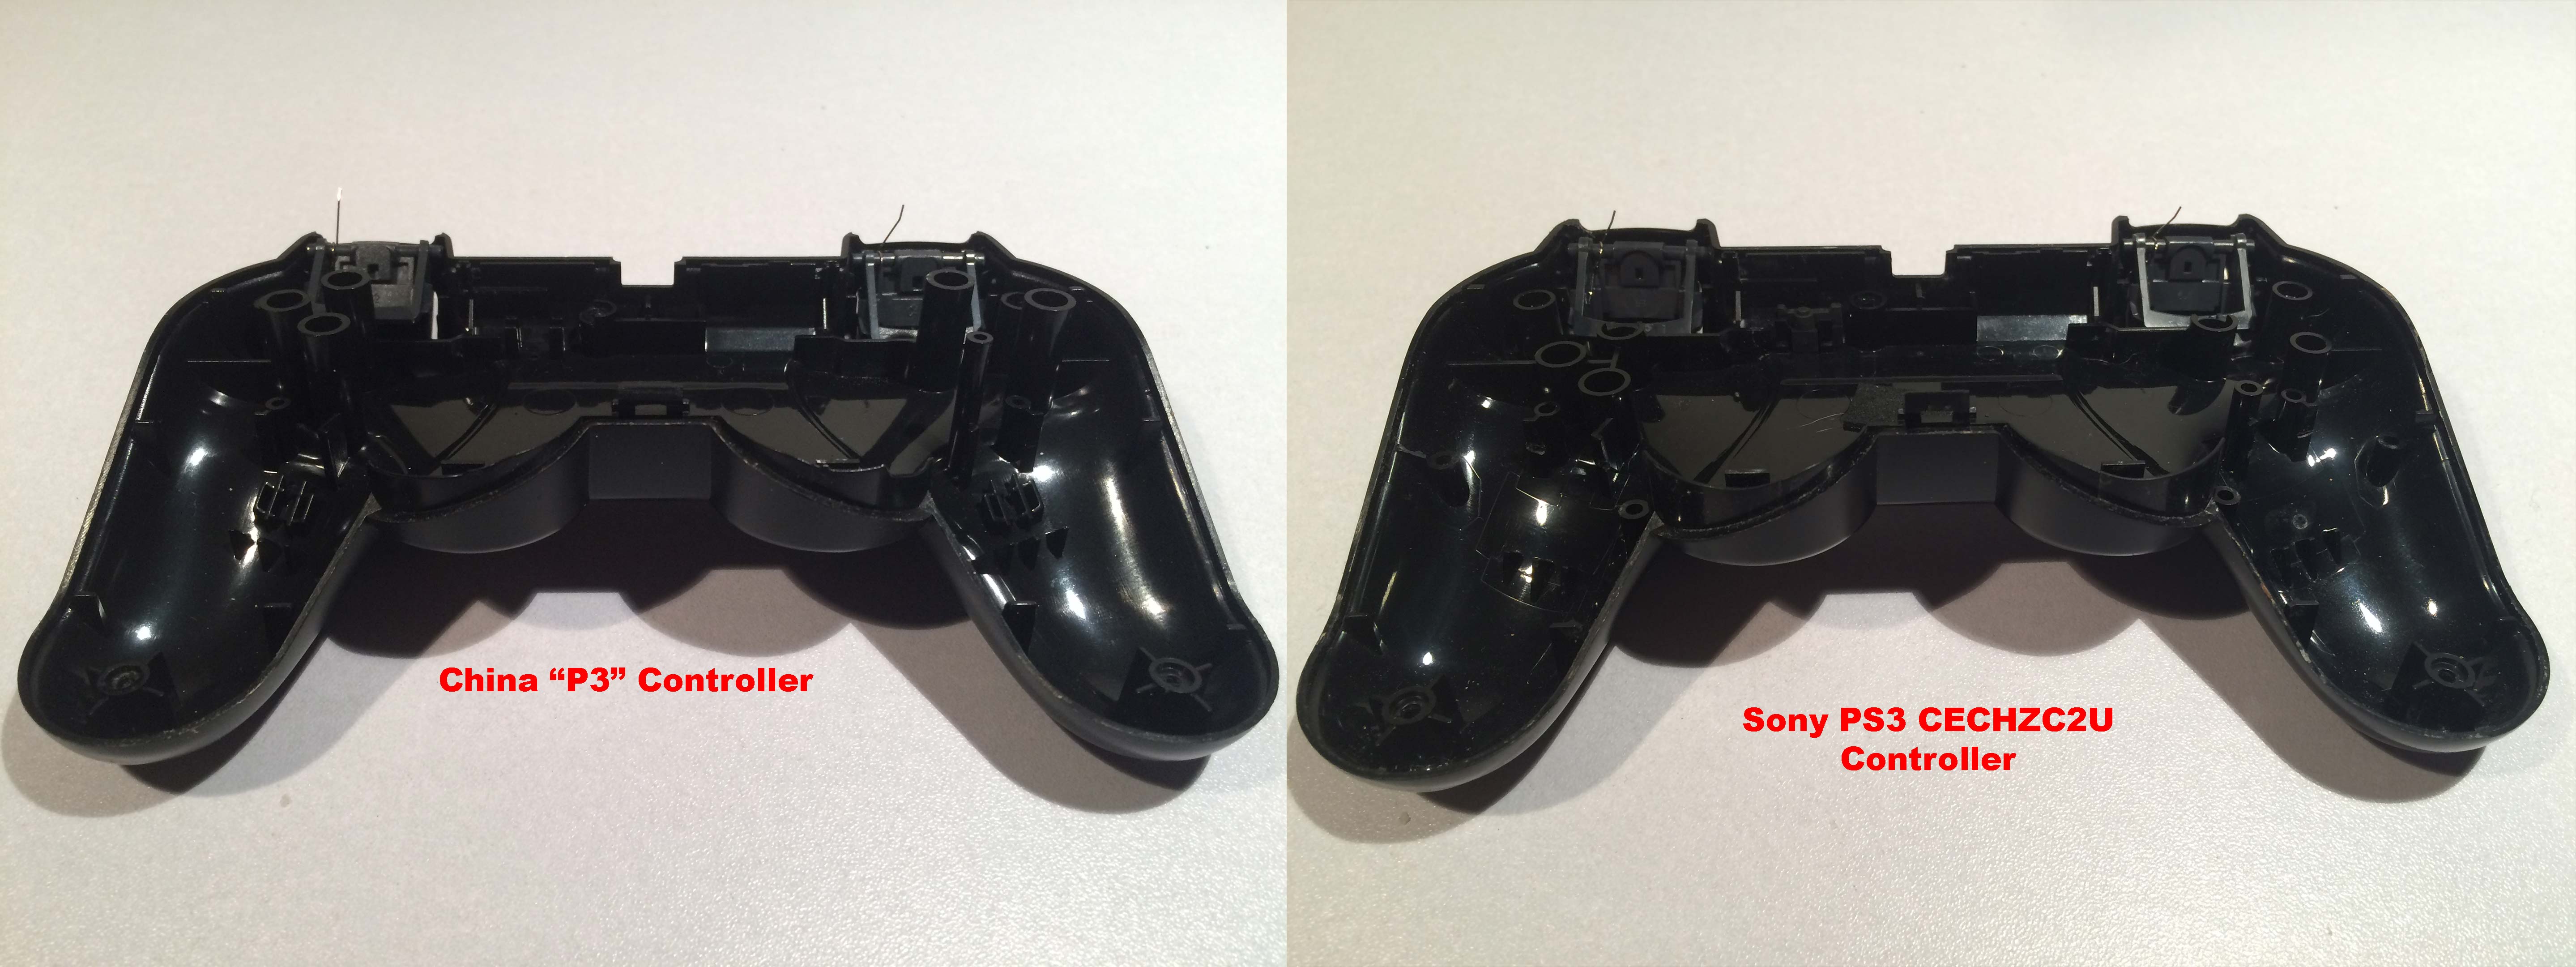 P3 versus PS3 controller bottom plastics.